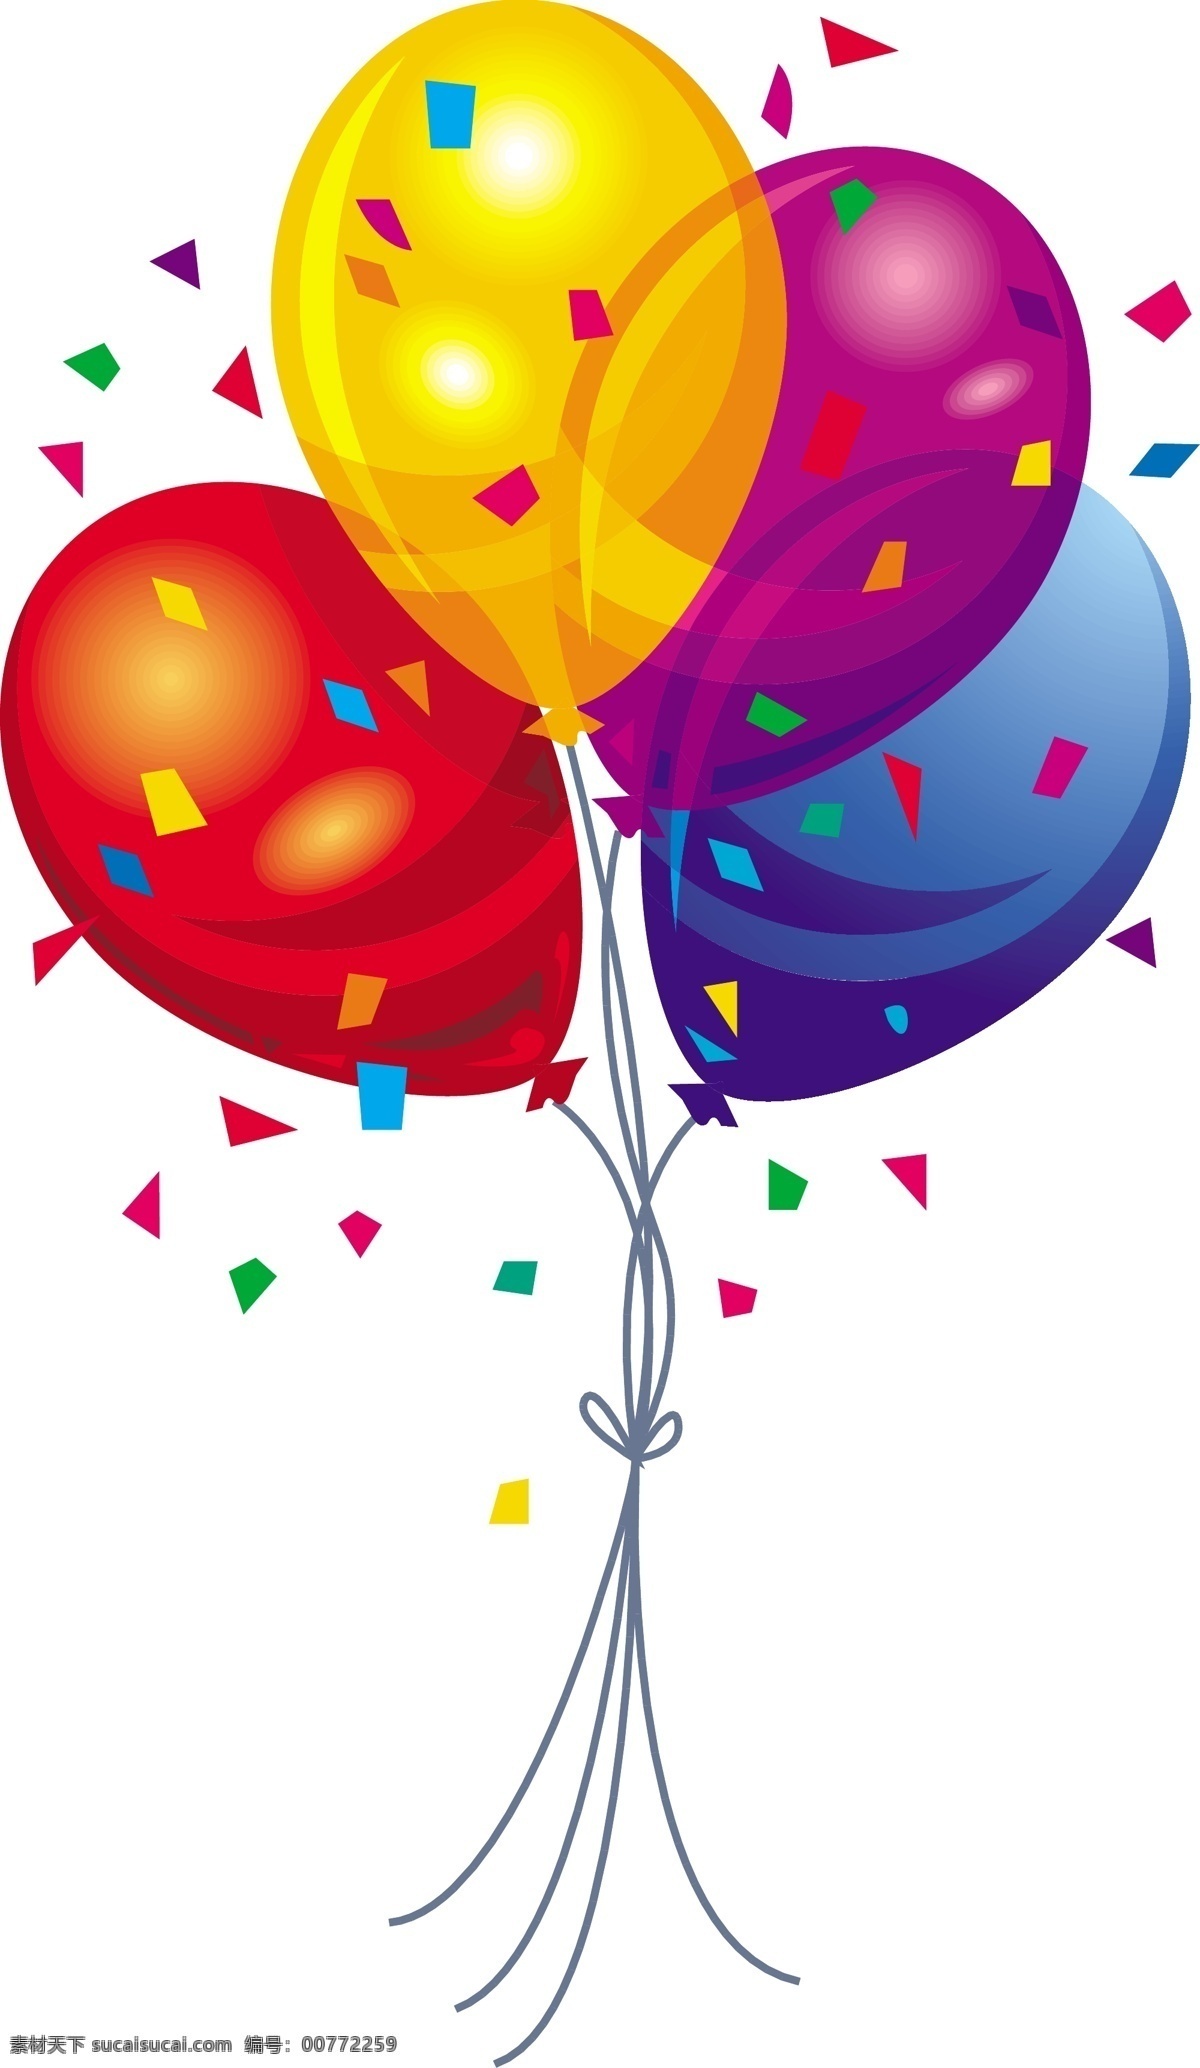 节日 四 色 气球 矢量 节日气球 氢气球 生日气球 彩色气球 礼物 庆祝 节日气氛 可爱气球 卡通气球 文化艺术 节日庆祝 潮流素材 矢量图